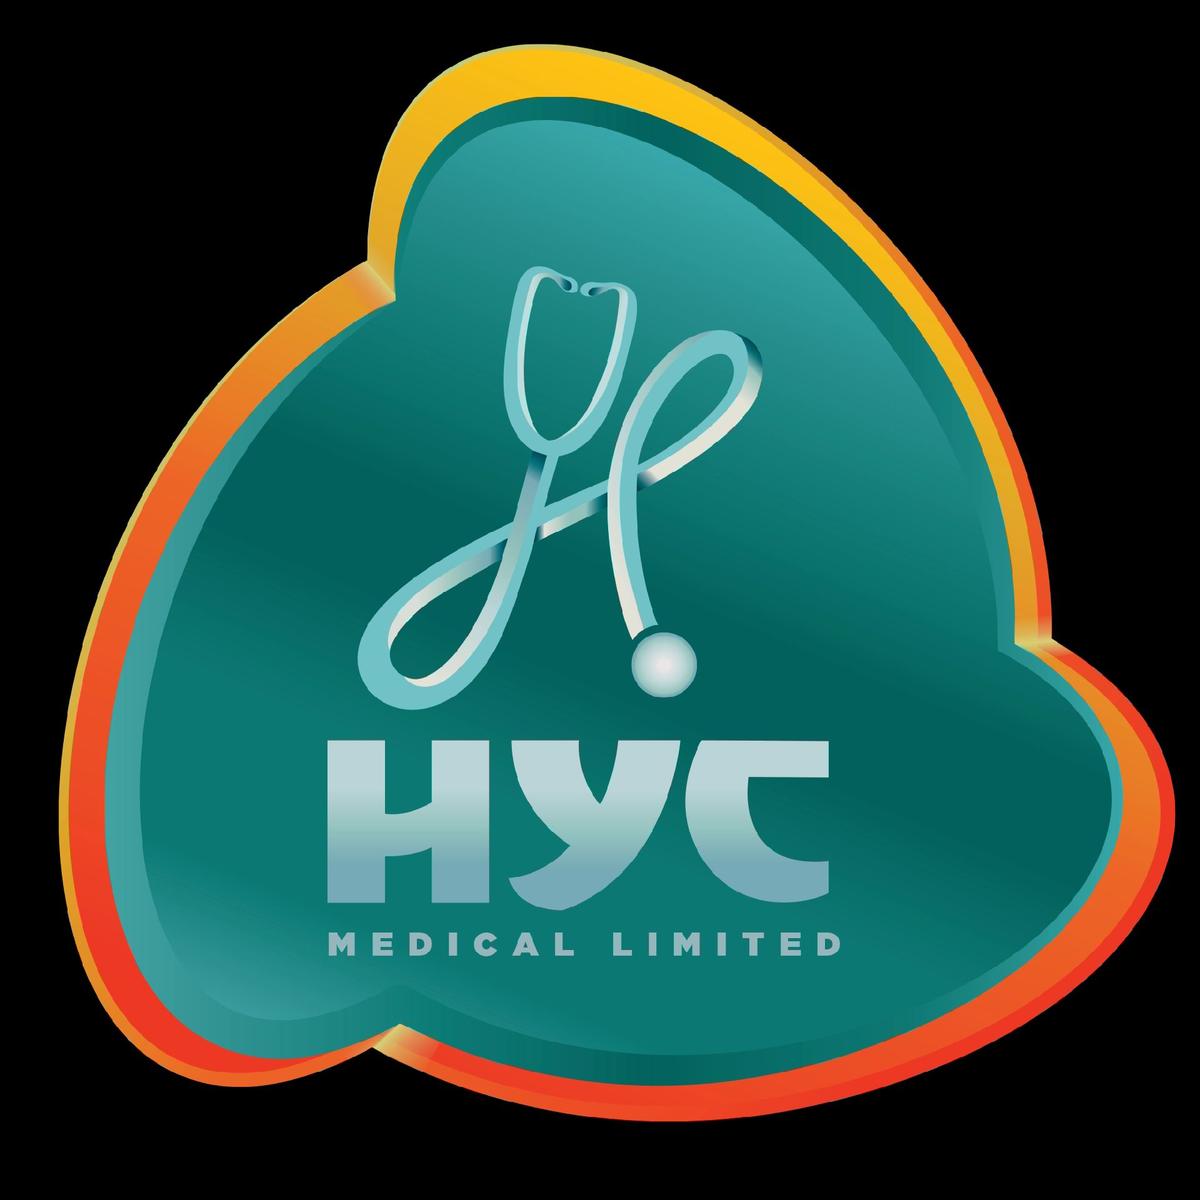 HYC MEDICAL JA's images